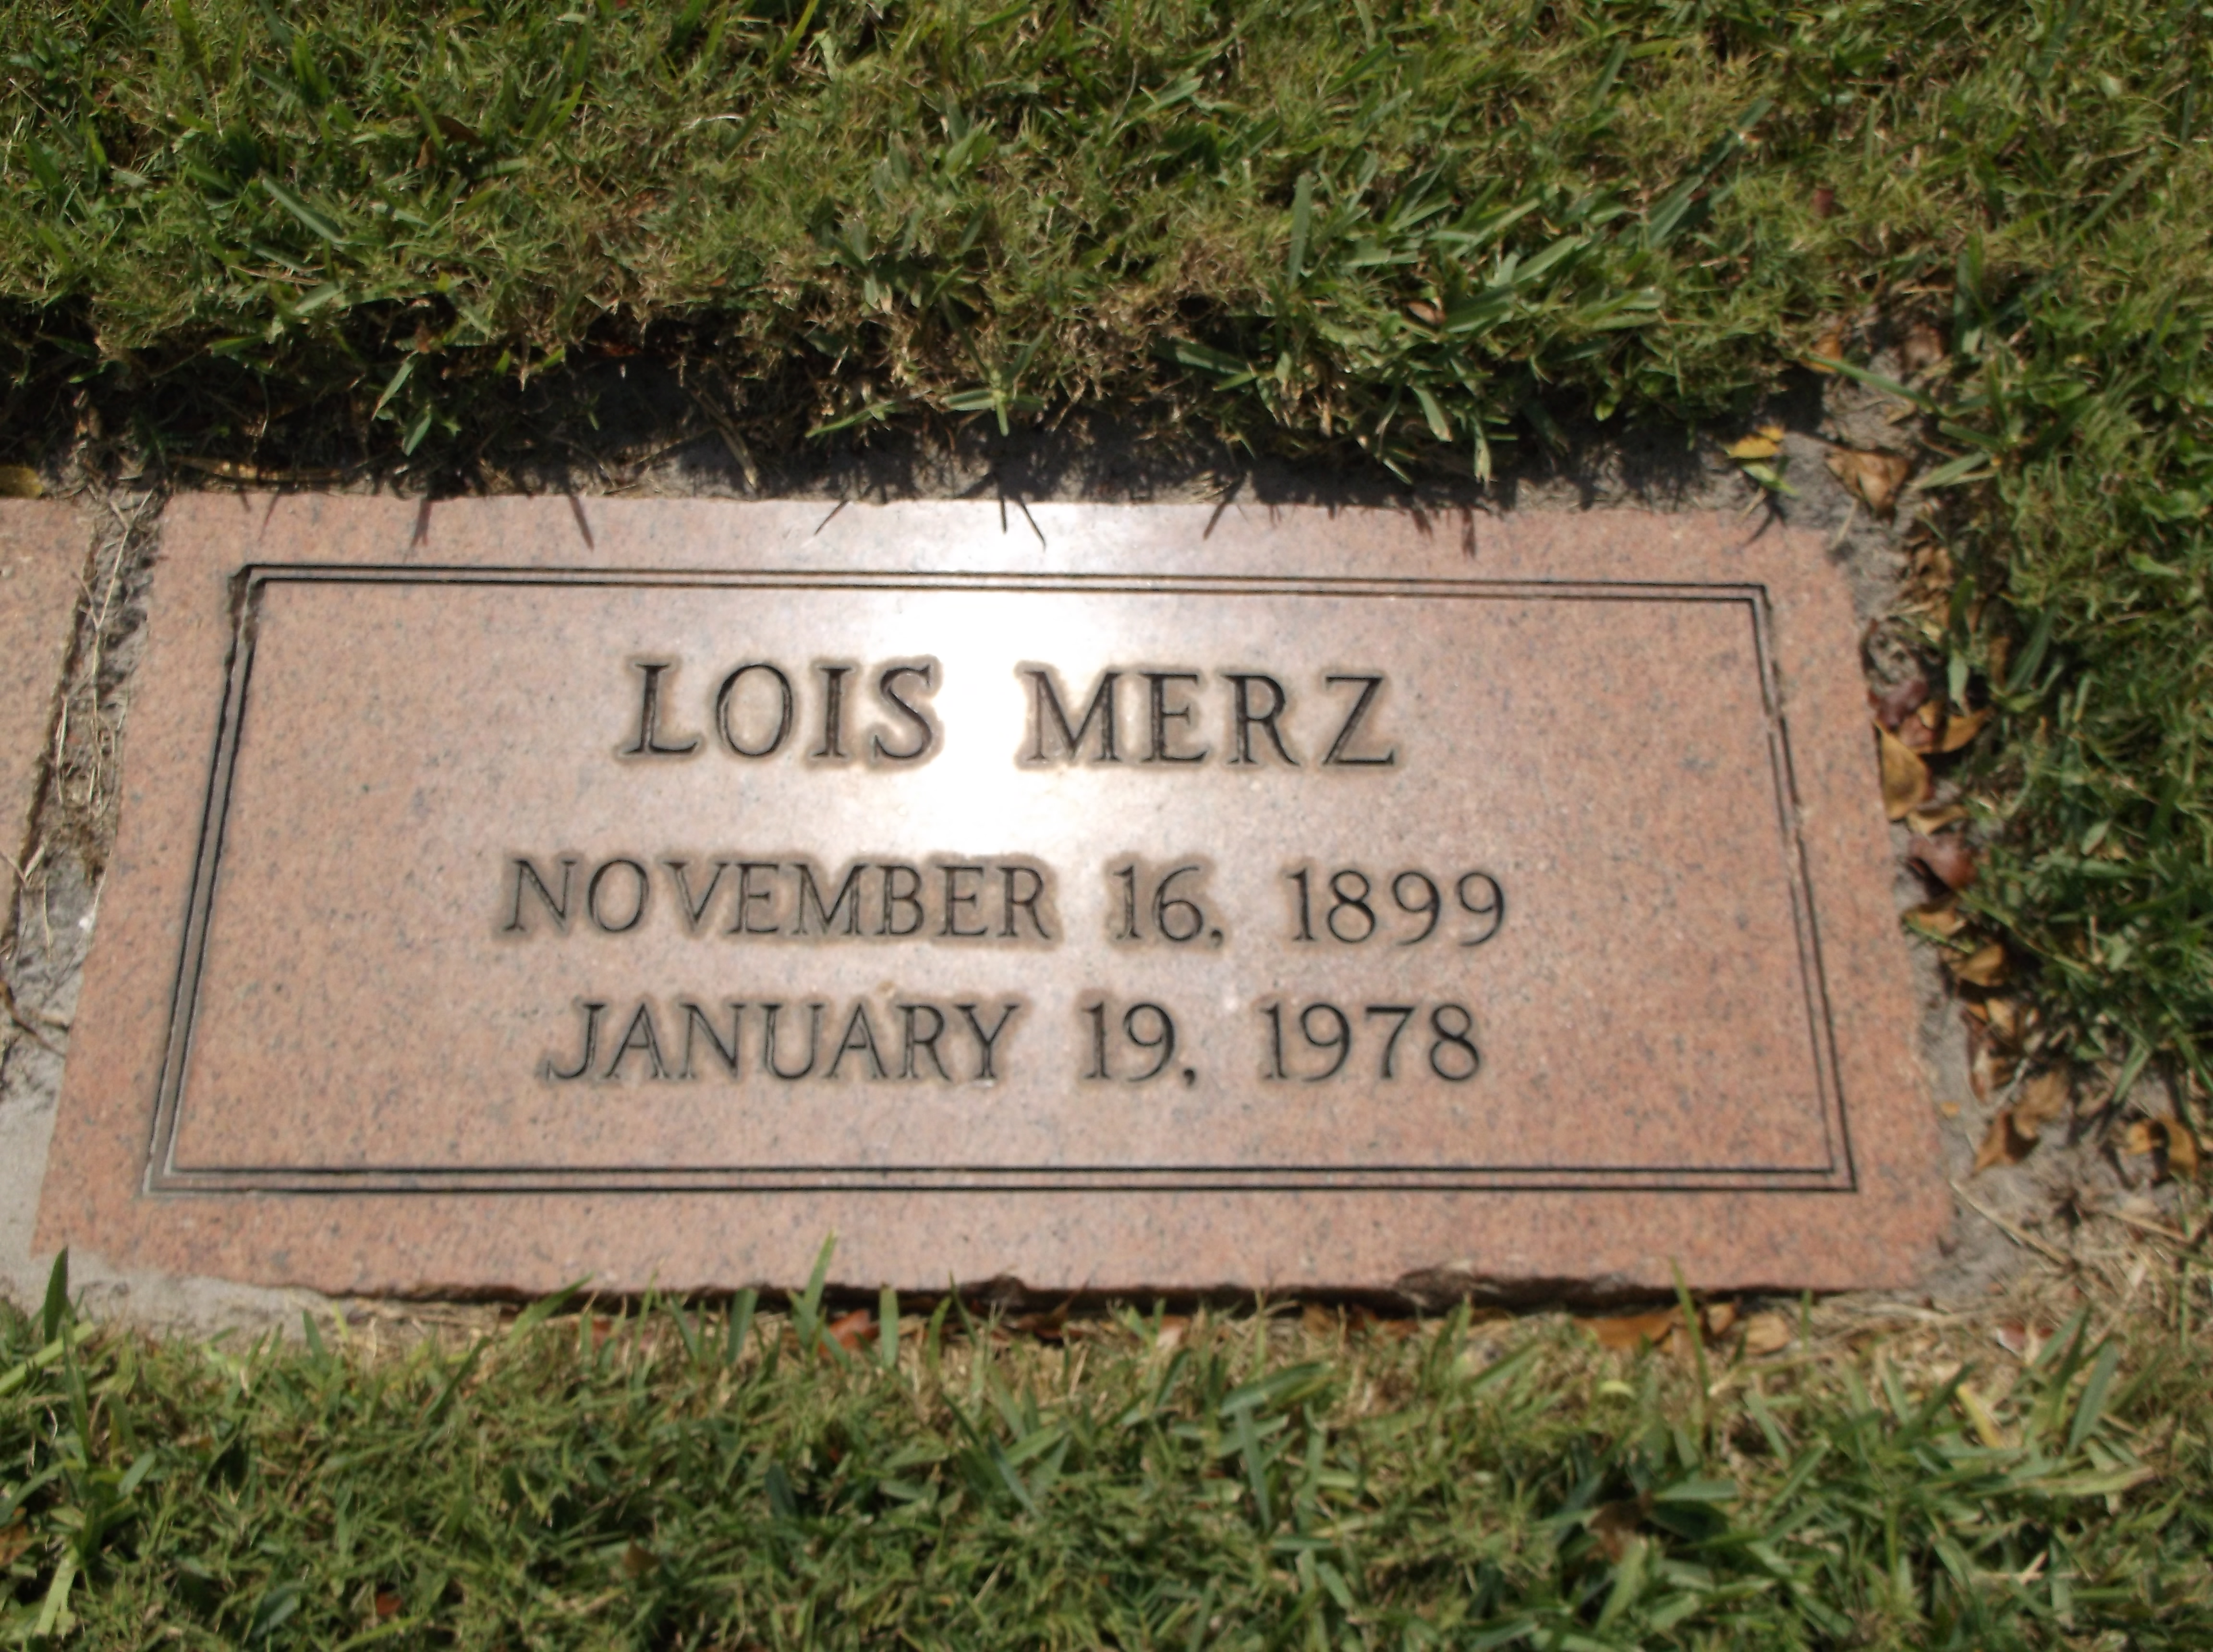 Lois Merz